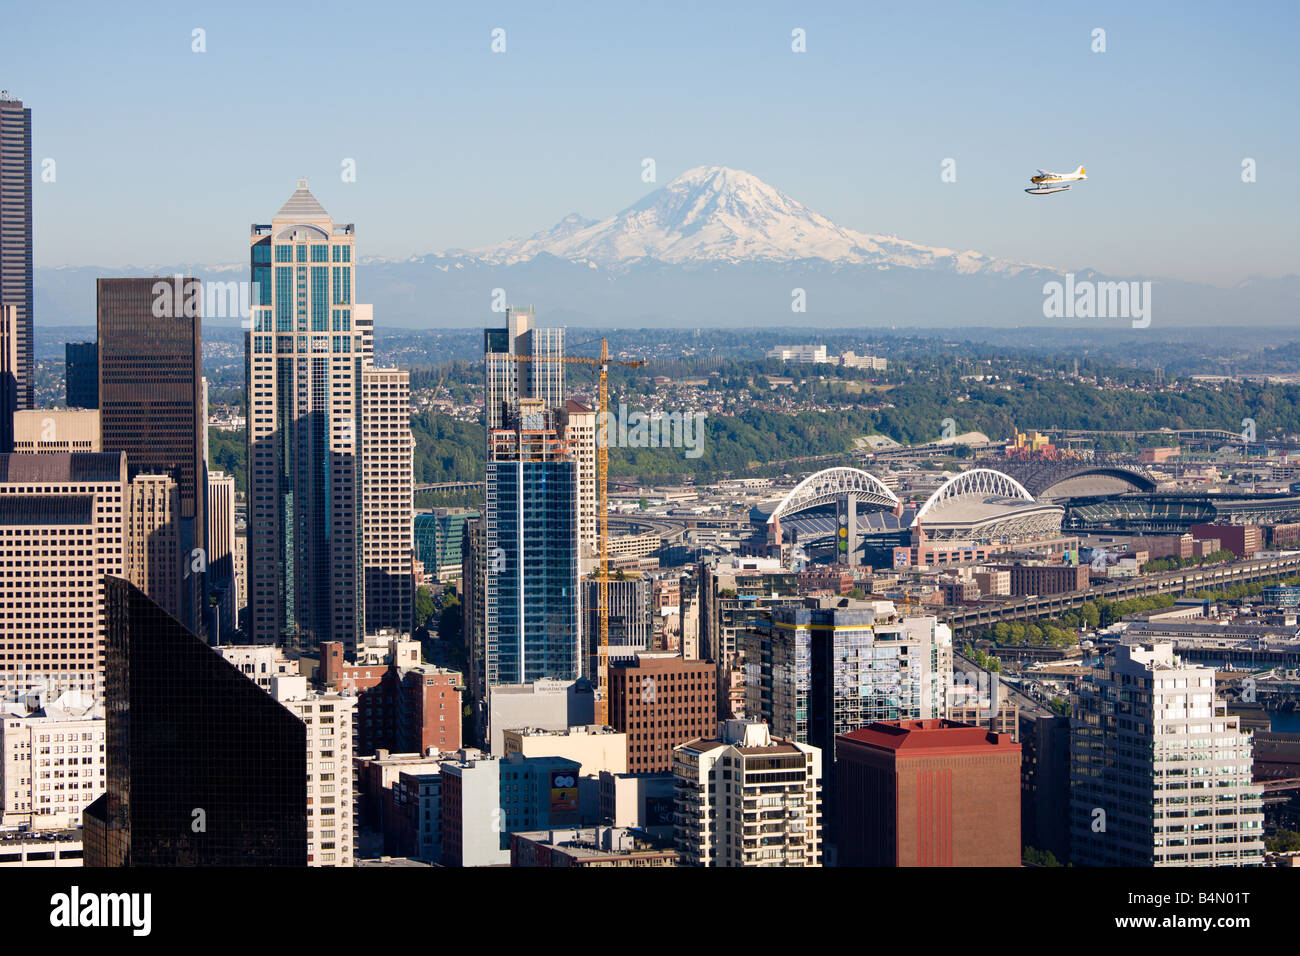 Approches d'hydravion centre-ville de Seattle avec Mt Rainier visible en arrière-plan Banque D'Images